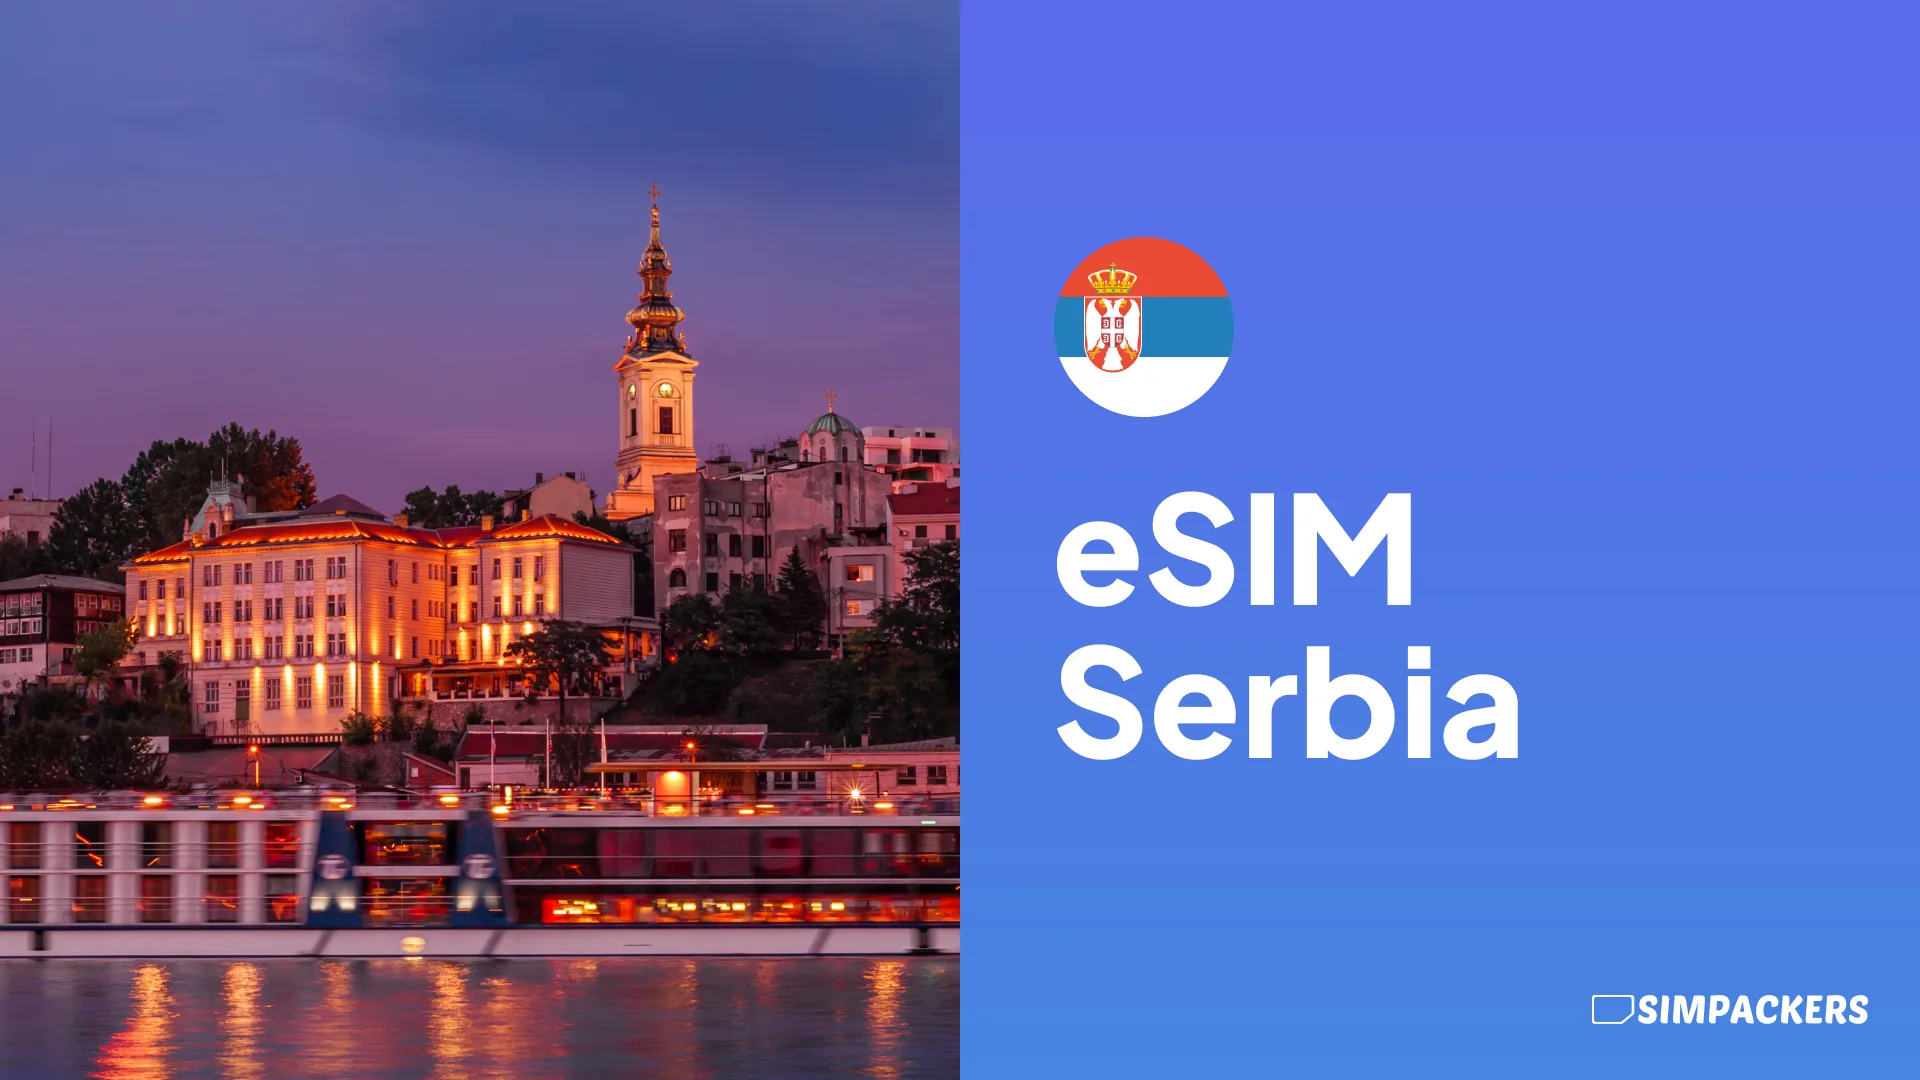 ES/FEATURED_IMAGES/esim-serbia.webp